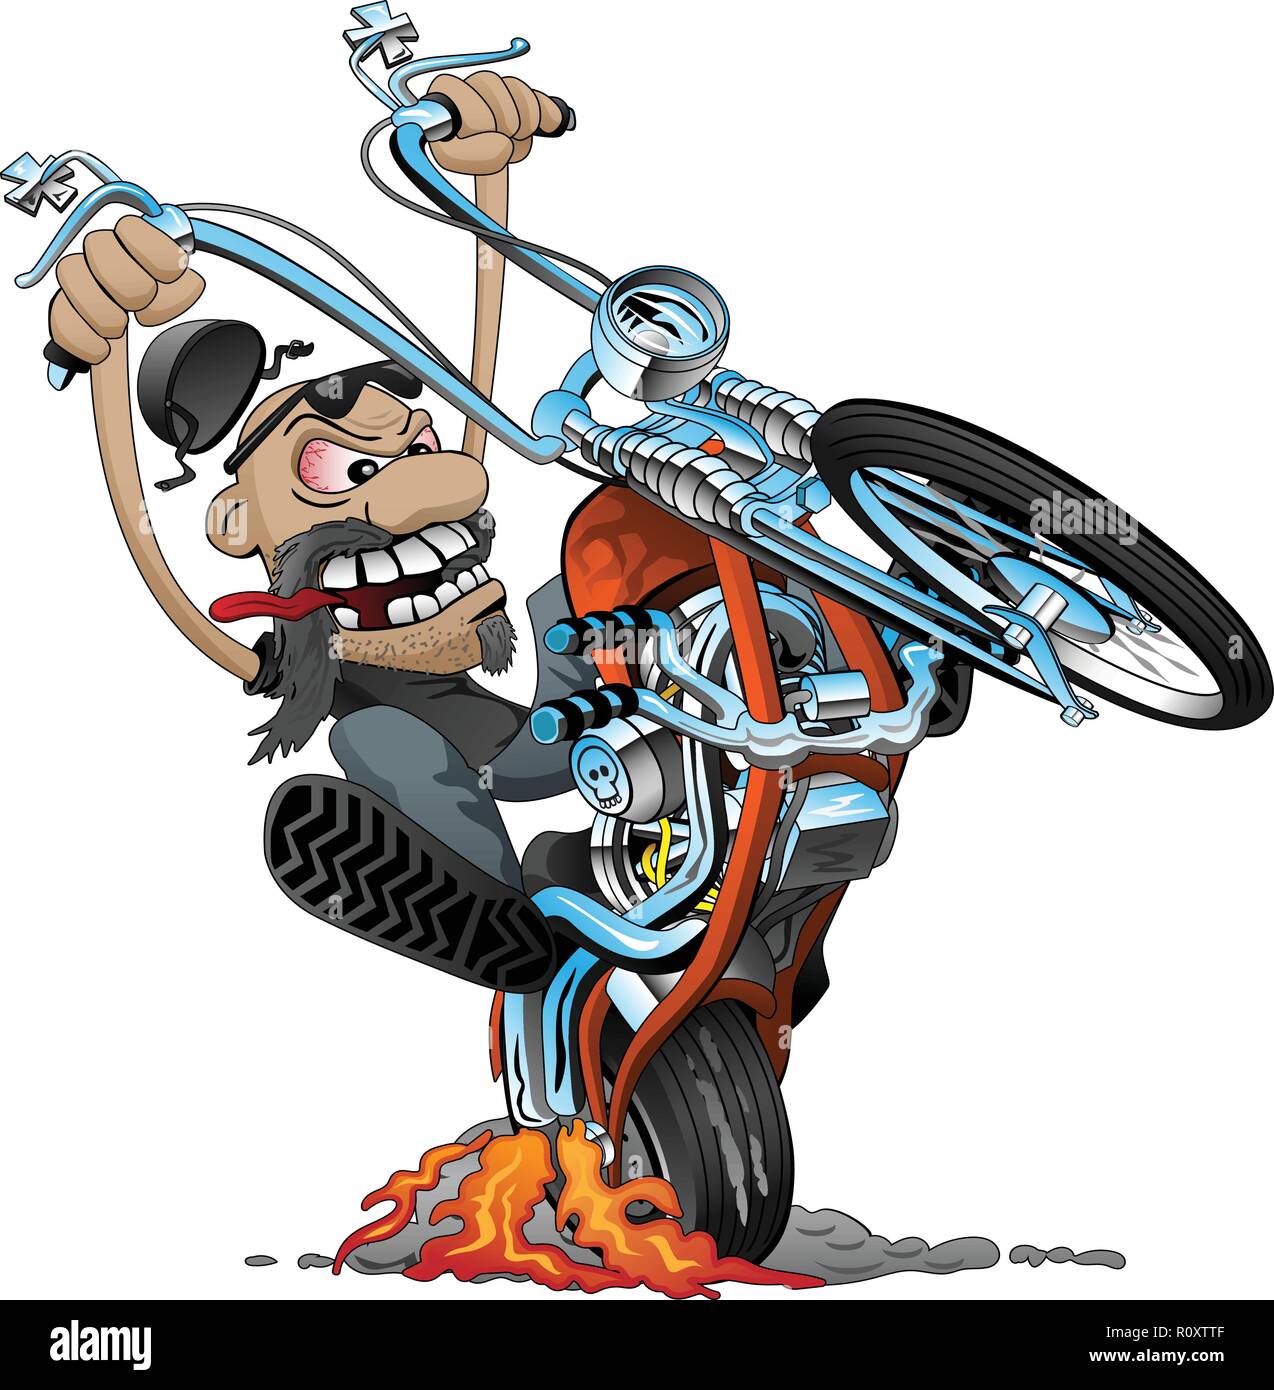 Crazy biker su una vecchia scuola moto chopper cartoon illustrazione vettoriale Illustrazione Vettoriale